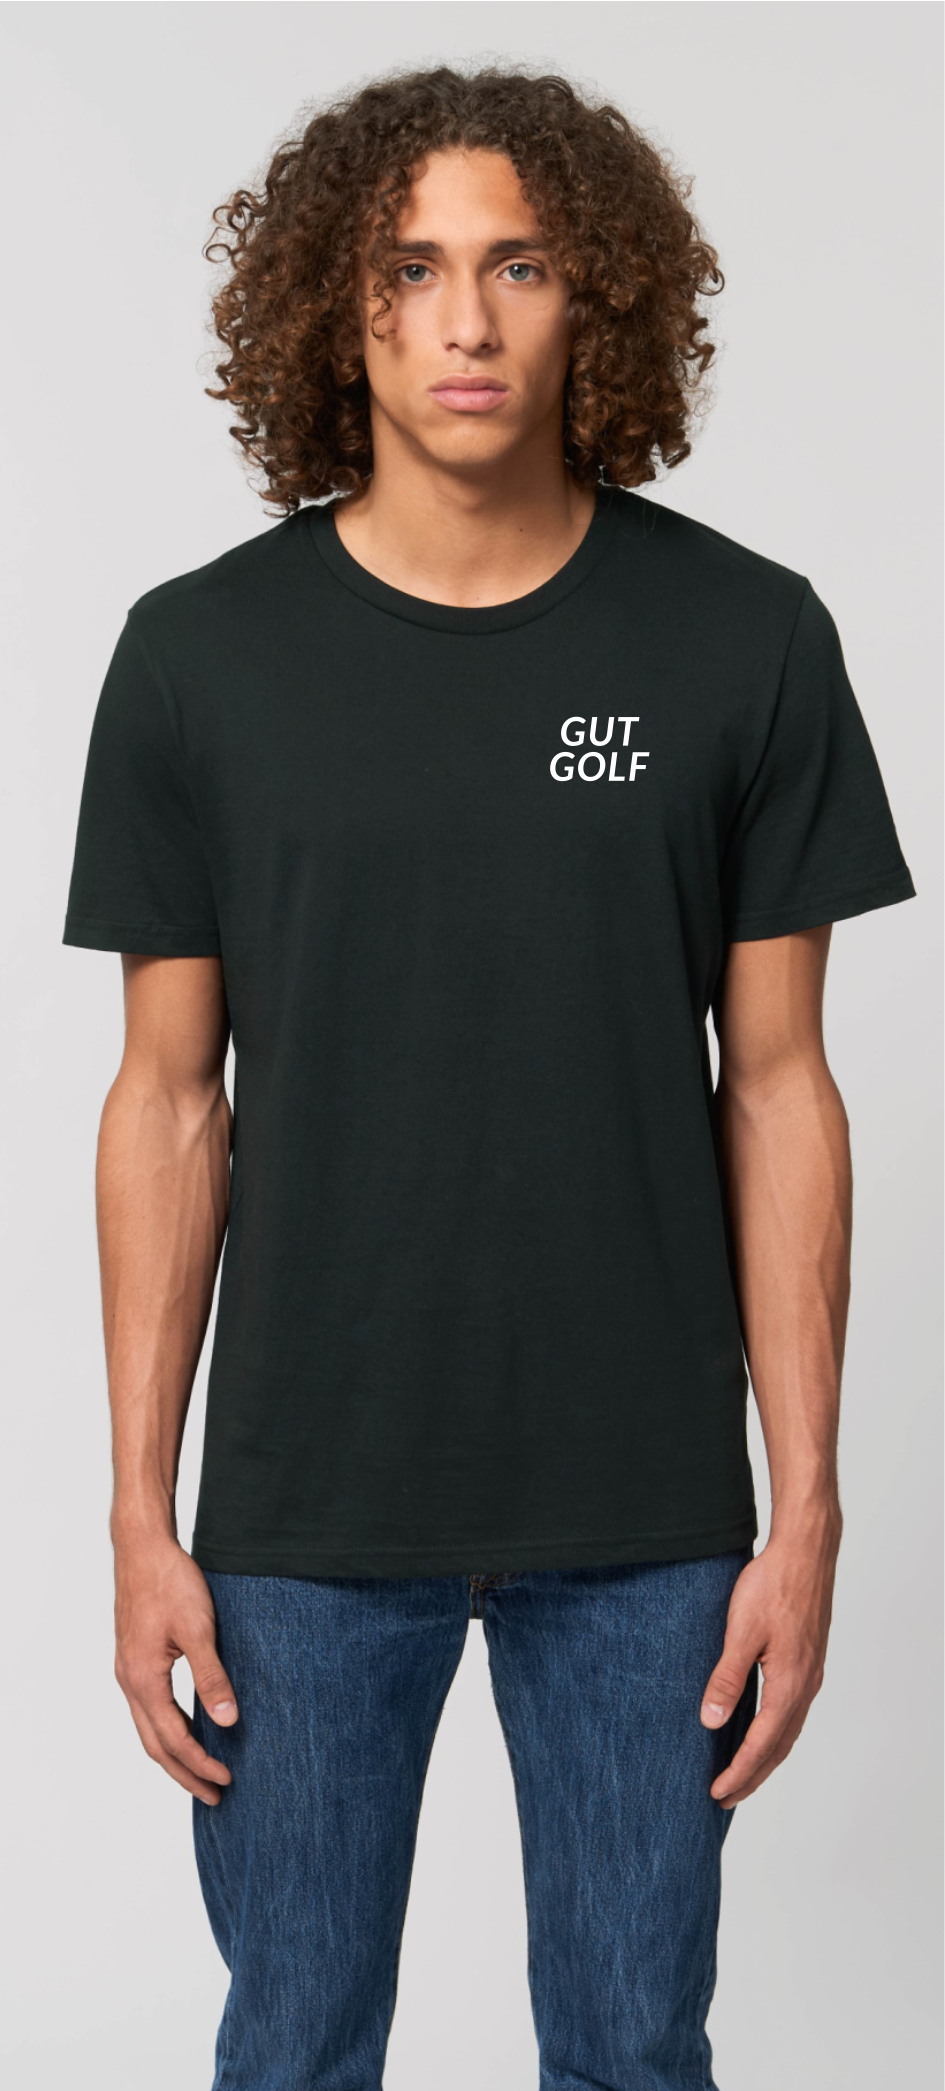 Gut Golf_ T-Shirt unisex